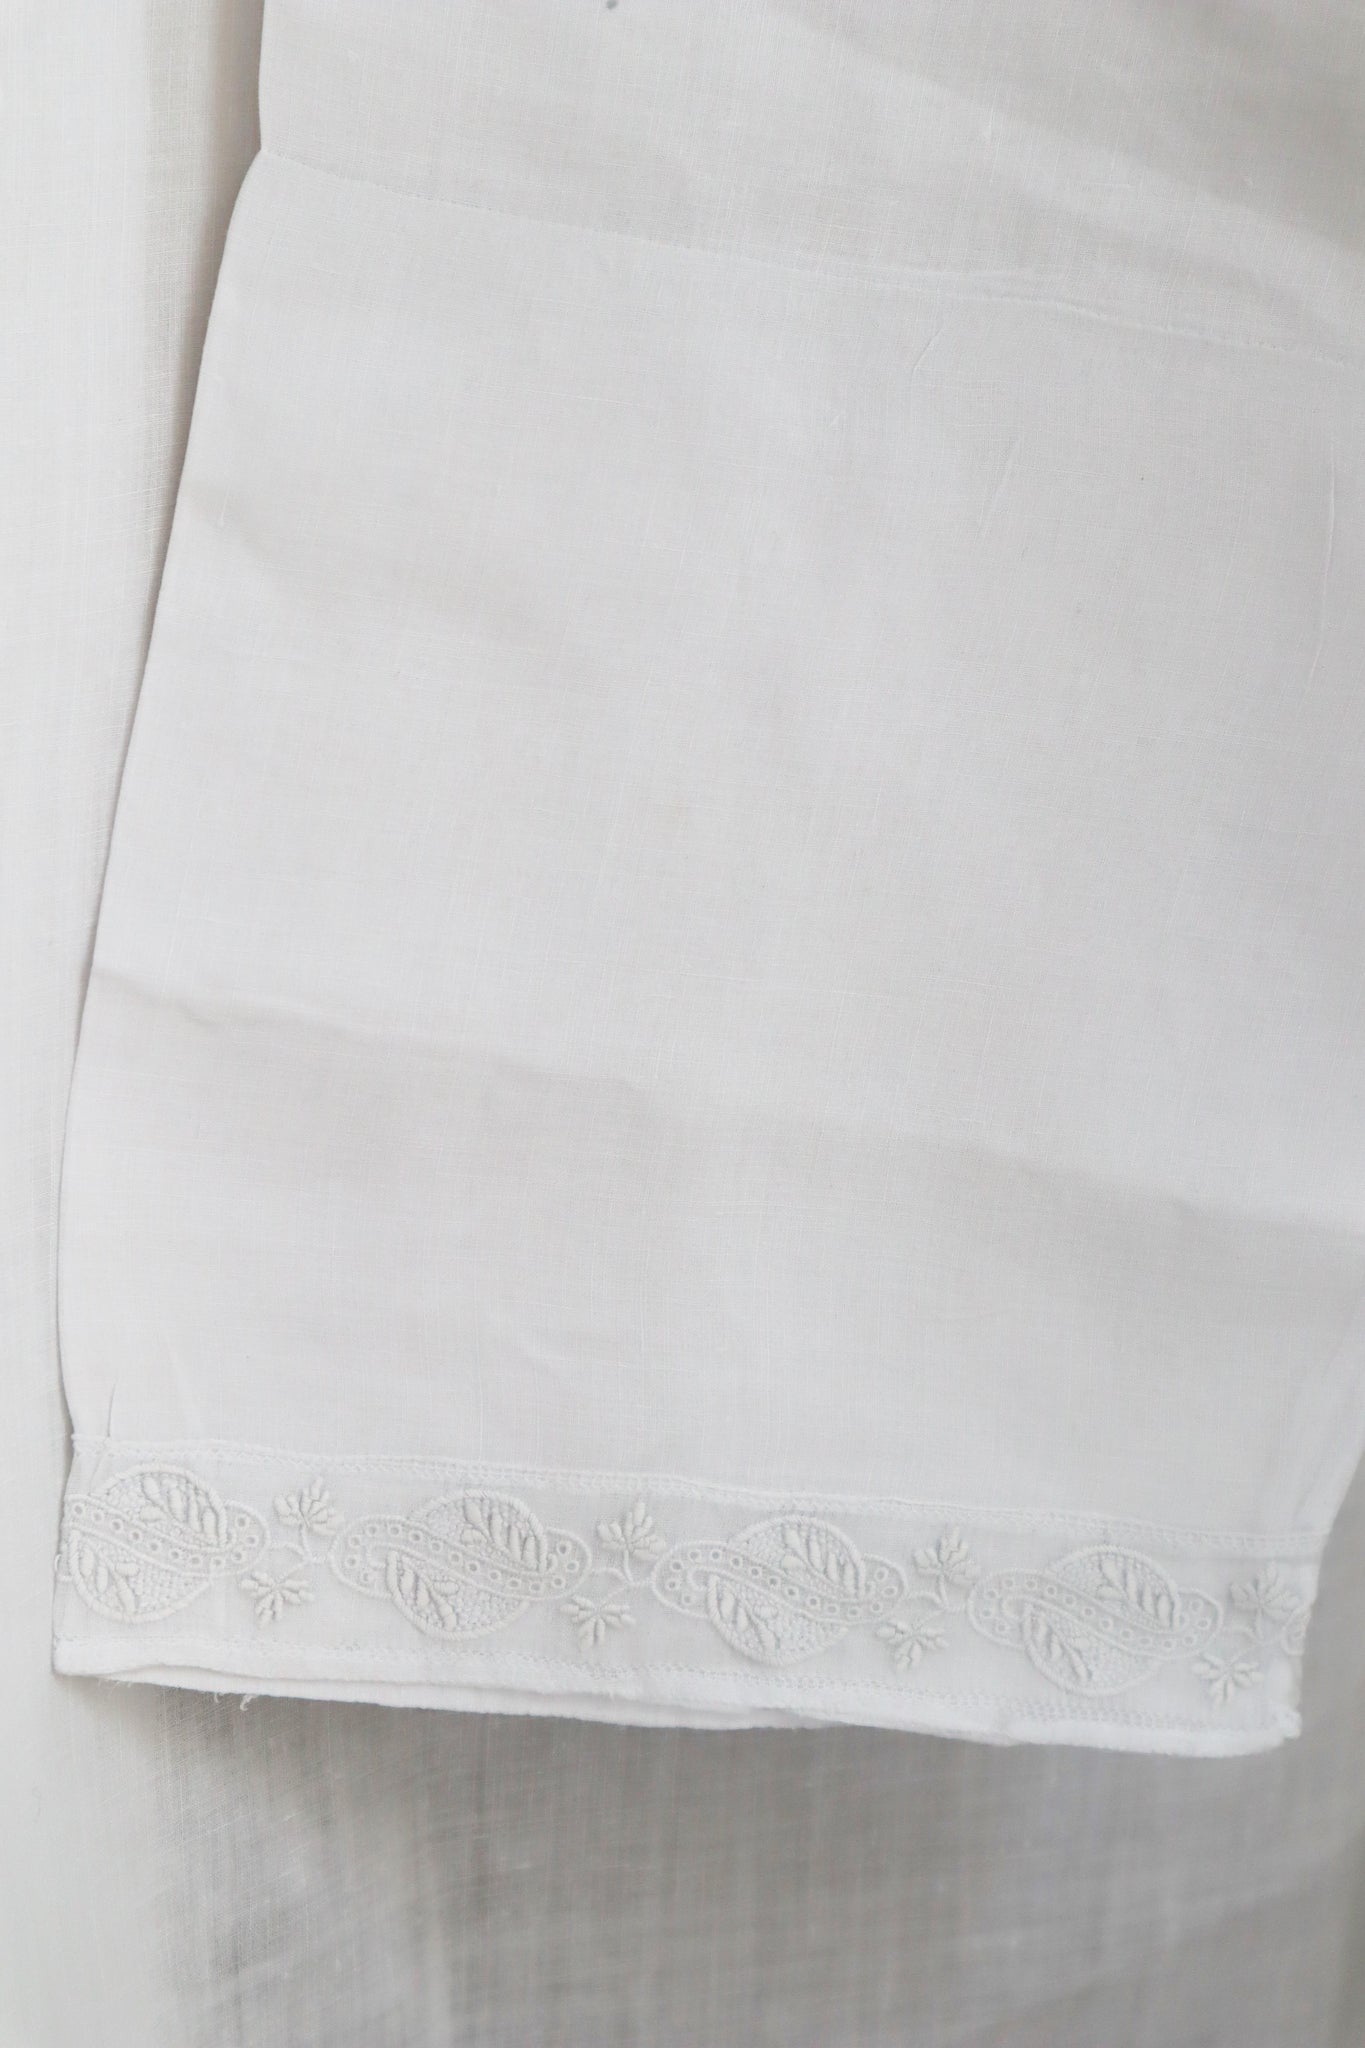 1900s Hand-Embroidered Cuffs Around The Neck Design White Linen Gauze Church Smock